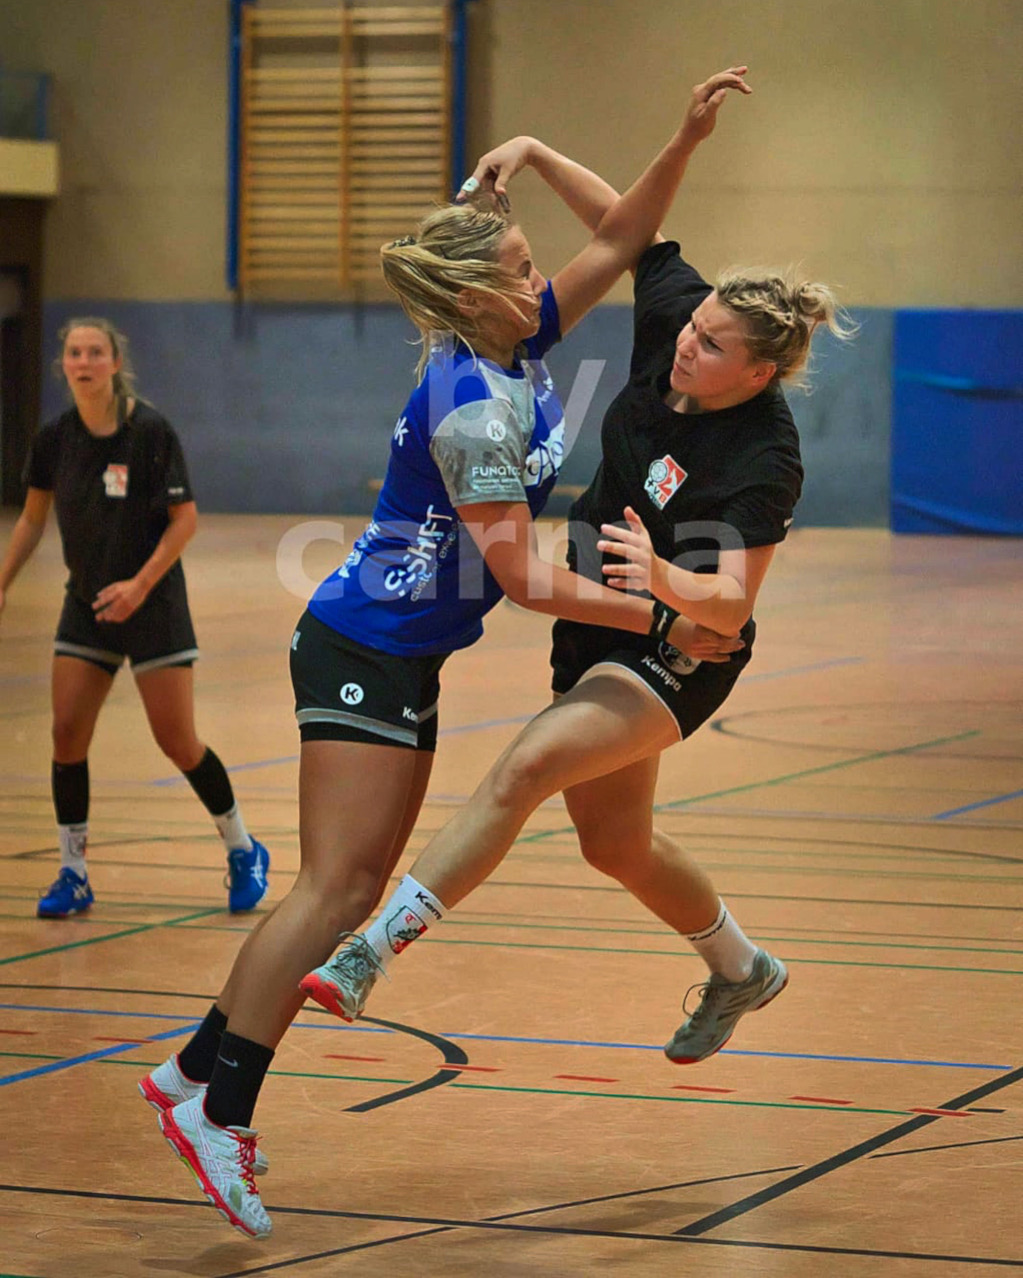 Manon Handball